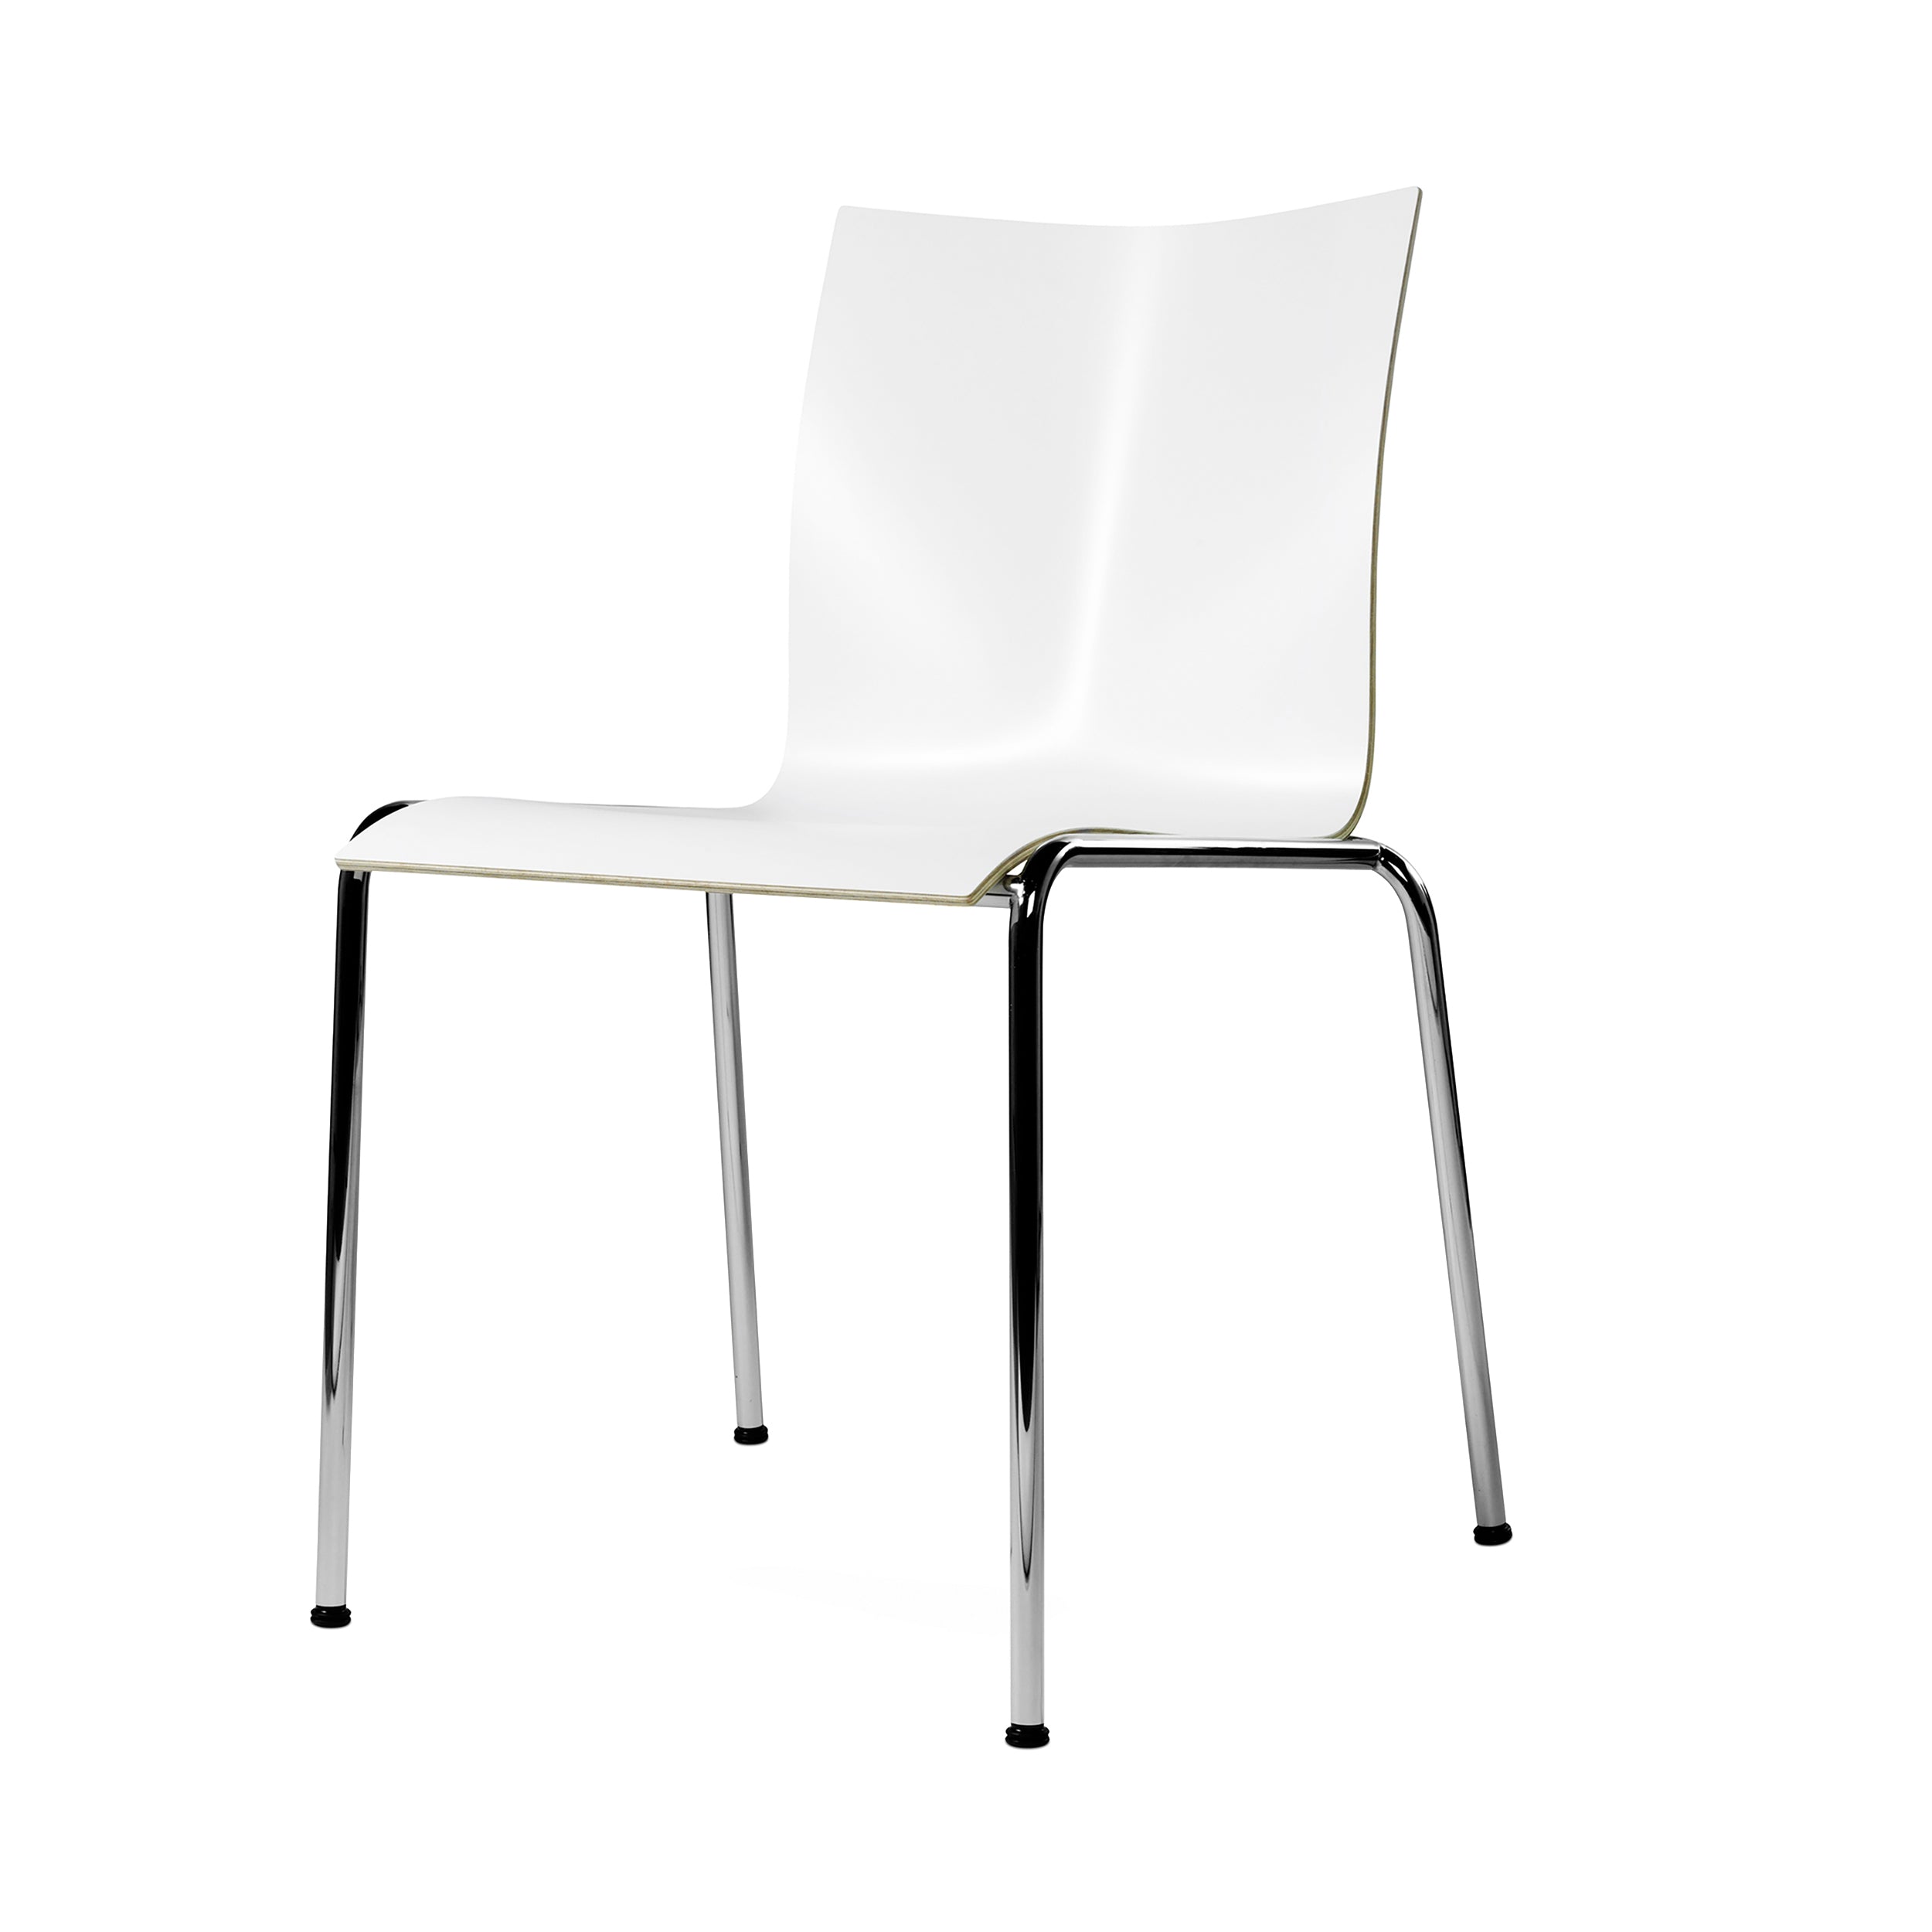 Chairik XL 121 Chair: 4-Legs: Melamine - White + Polished Chrome